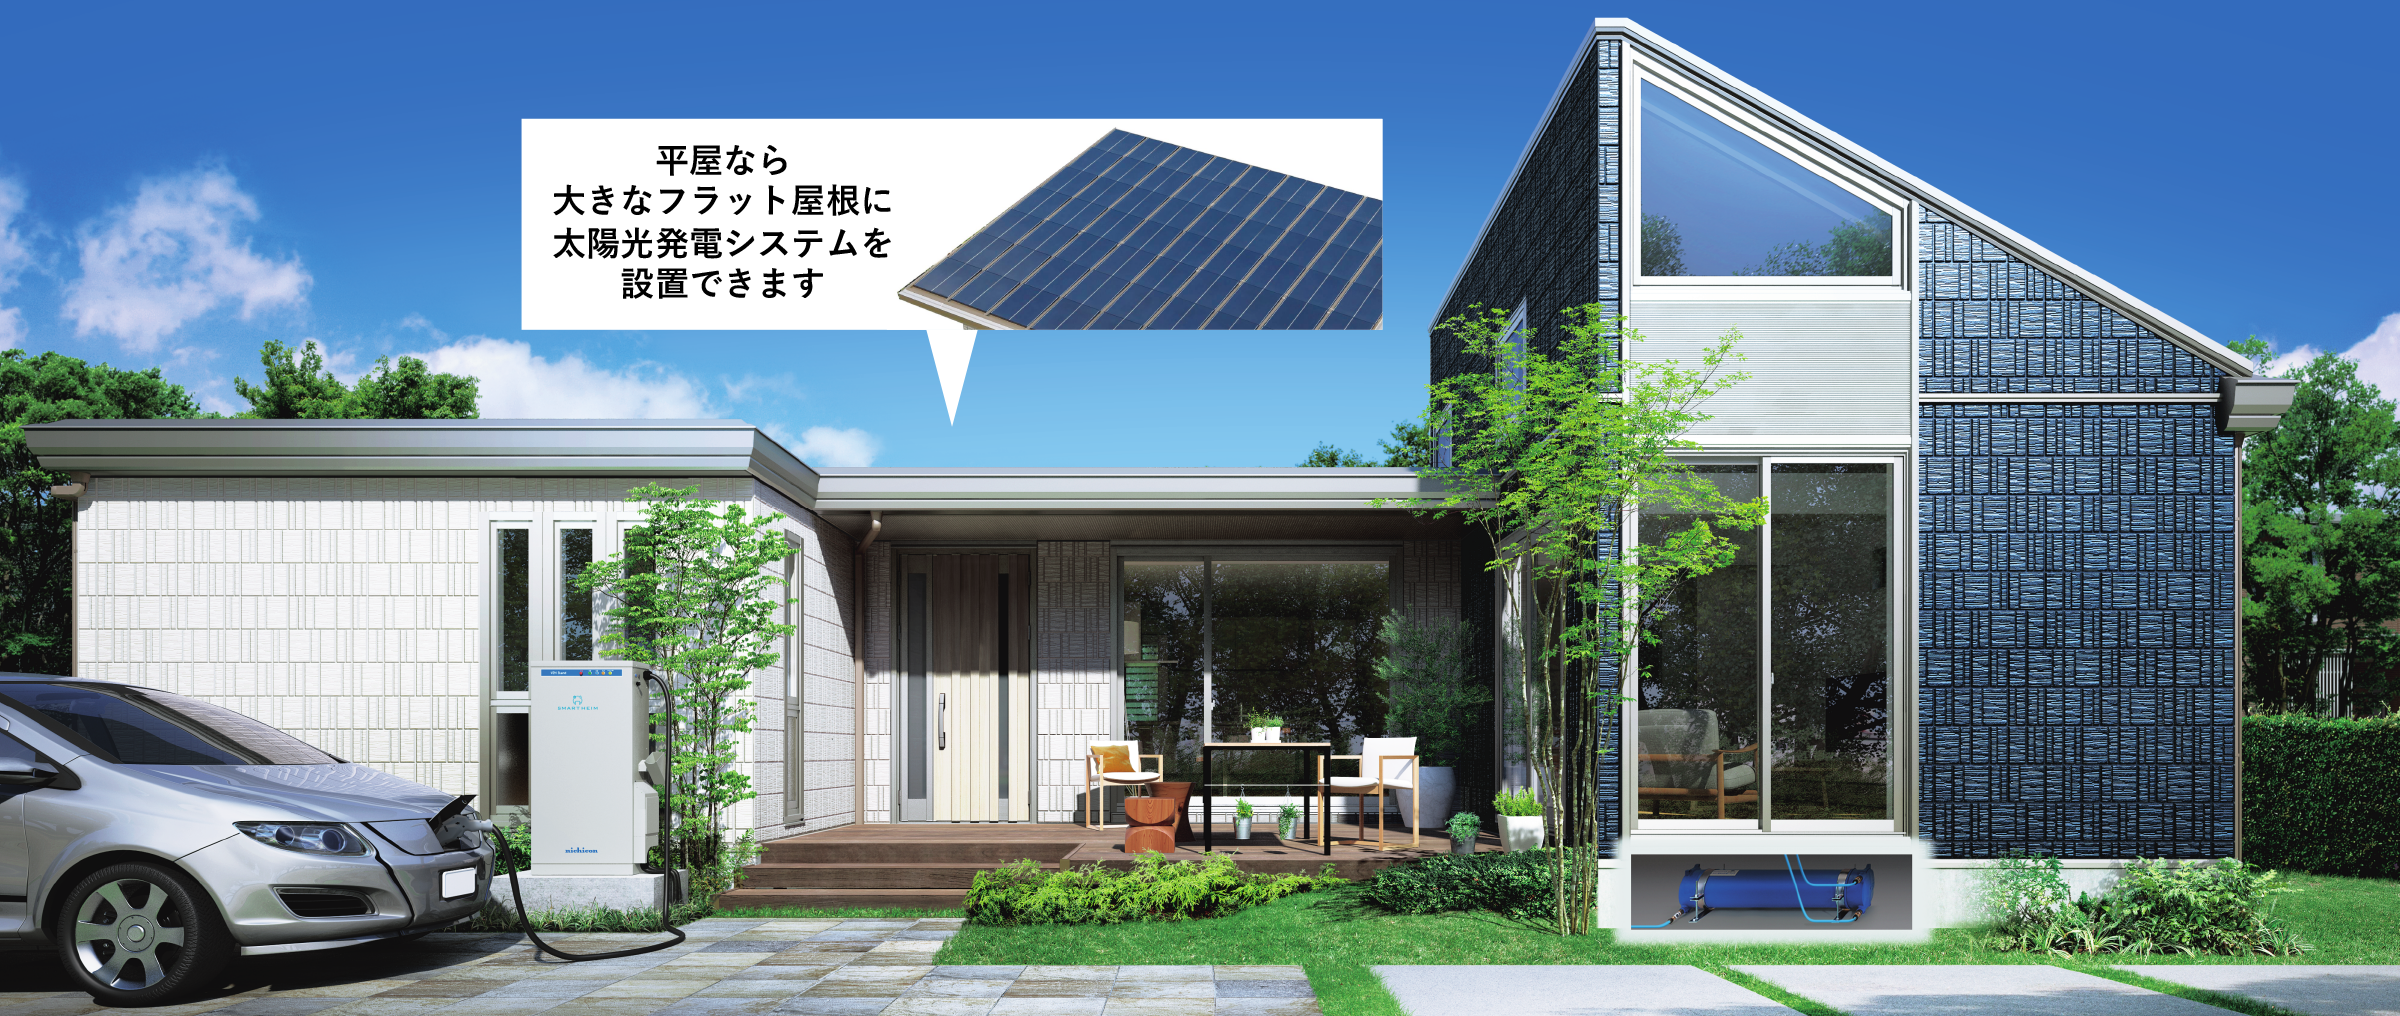 平屋なら大きなフラット屋根に太陽光発電システムを設置できます